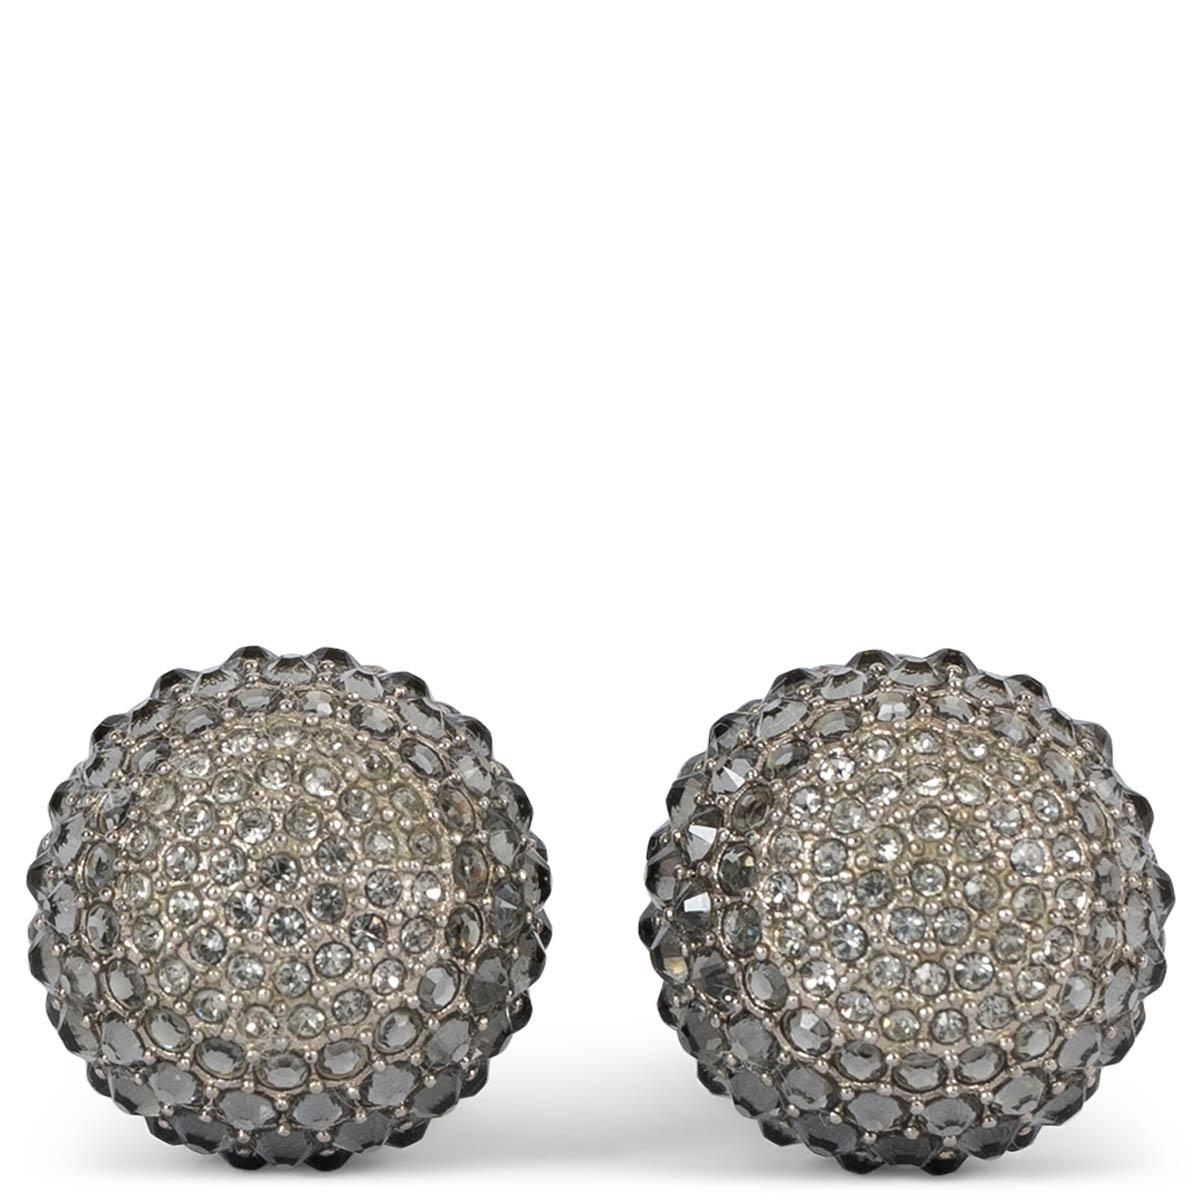 Boucles d'oreilles Christian Dior Tribales 100% authentiques en cristal gunmetal incrusté et fausses perles roses. Ils ont été portés et sont en excellent état. 

Toutes nos annonces comprennent uniquement l'article listé, sauf indication contraire